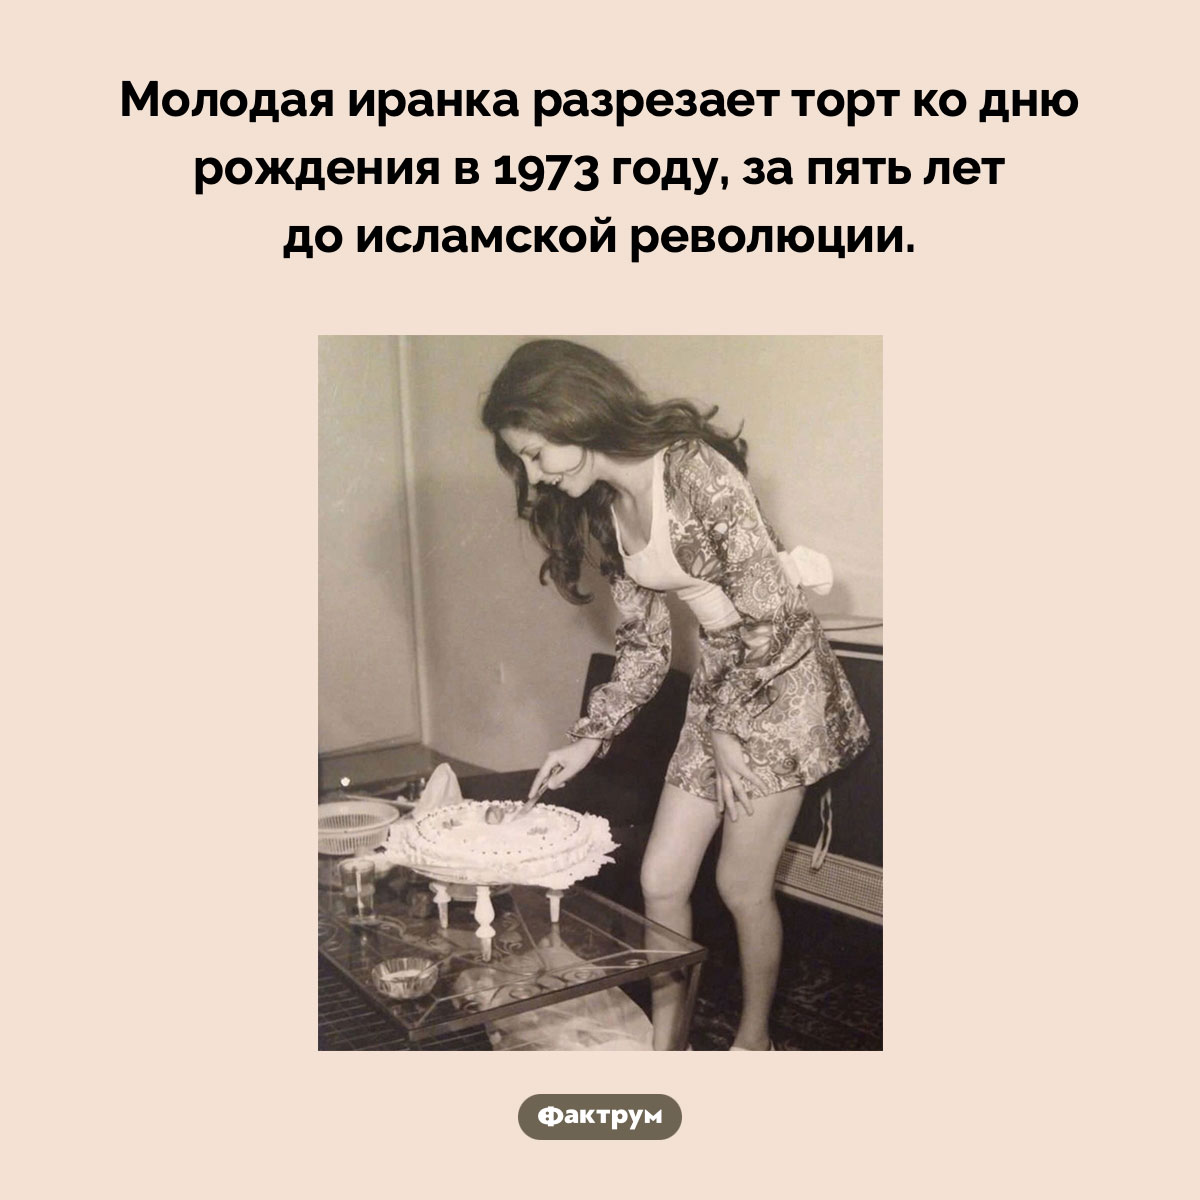 До исламской революции. Молодая иранка разрезает торт ко дню рождения в 1973 году, за пять лет до исламской революции.